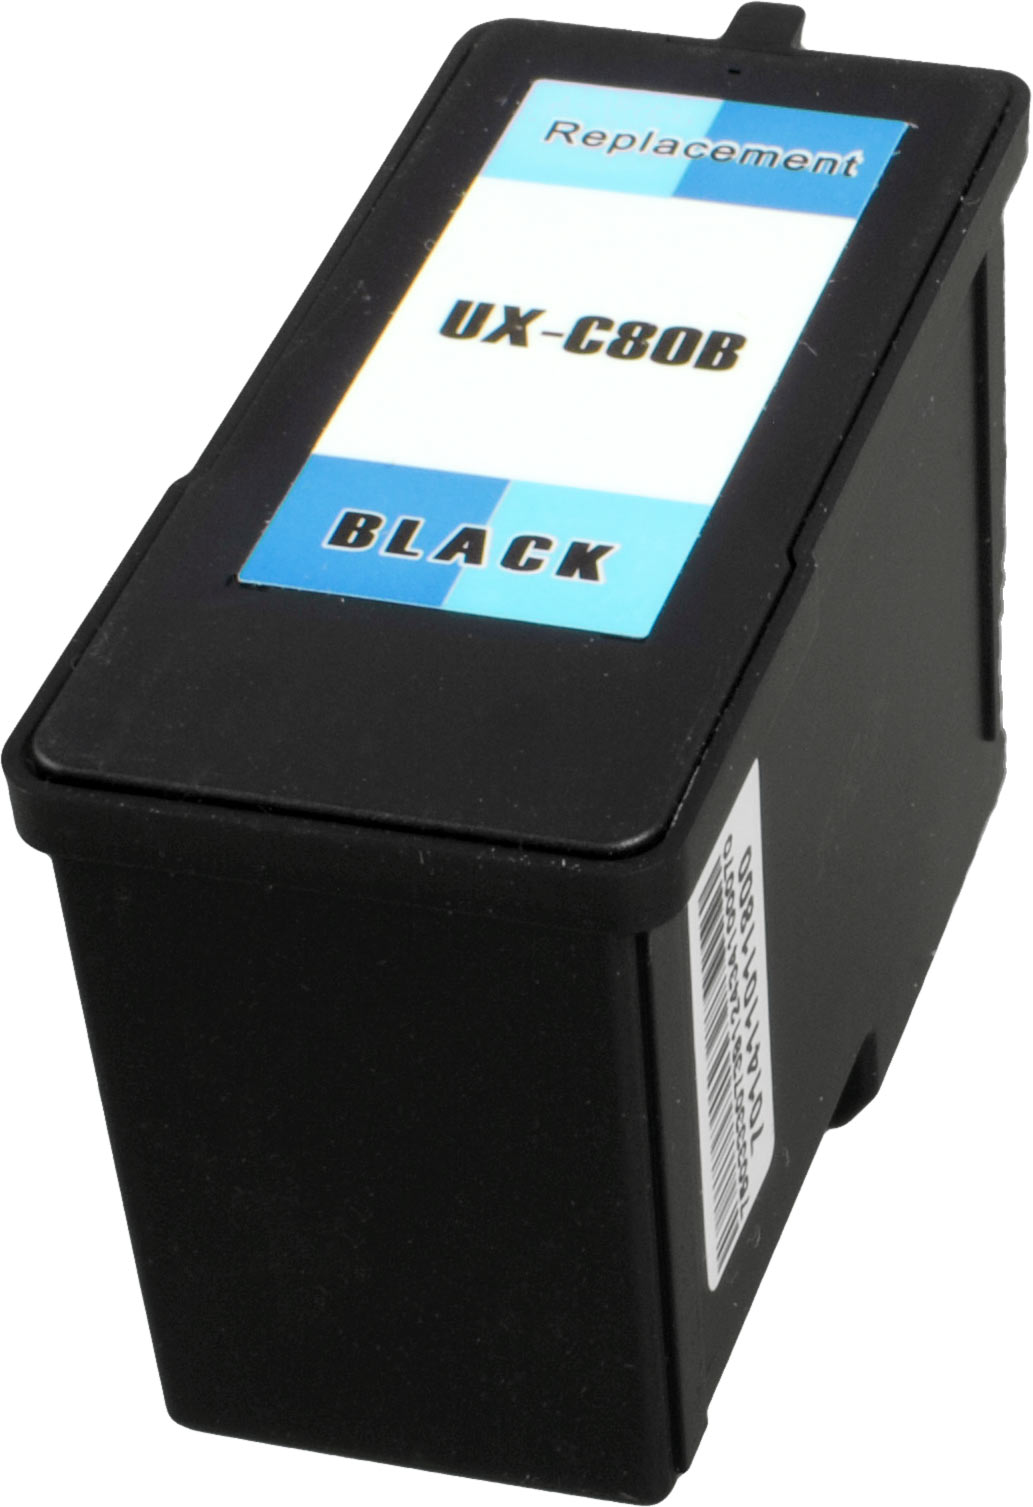 Ampertec Tinte für Sharp UX-C80B  schwarz